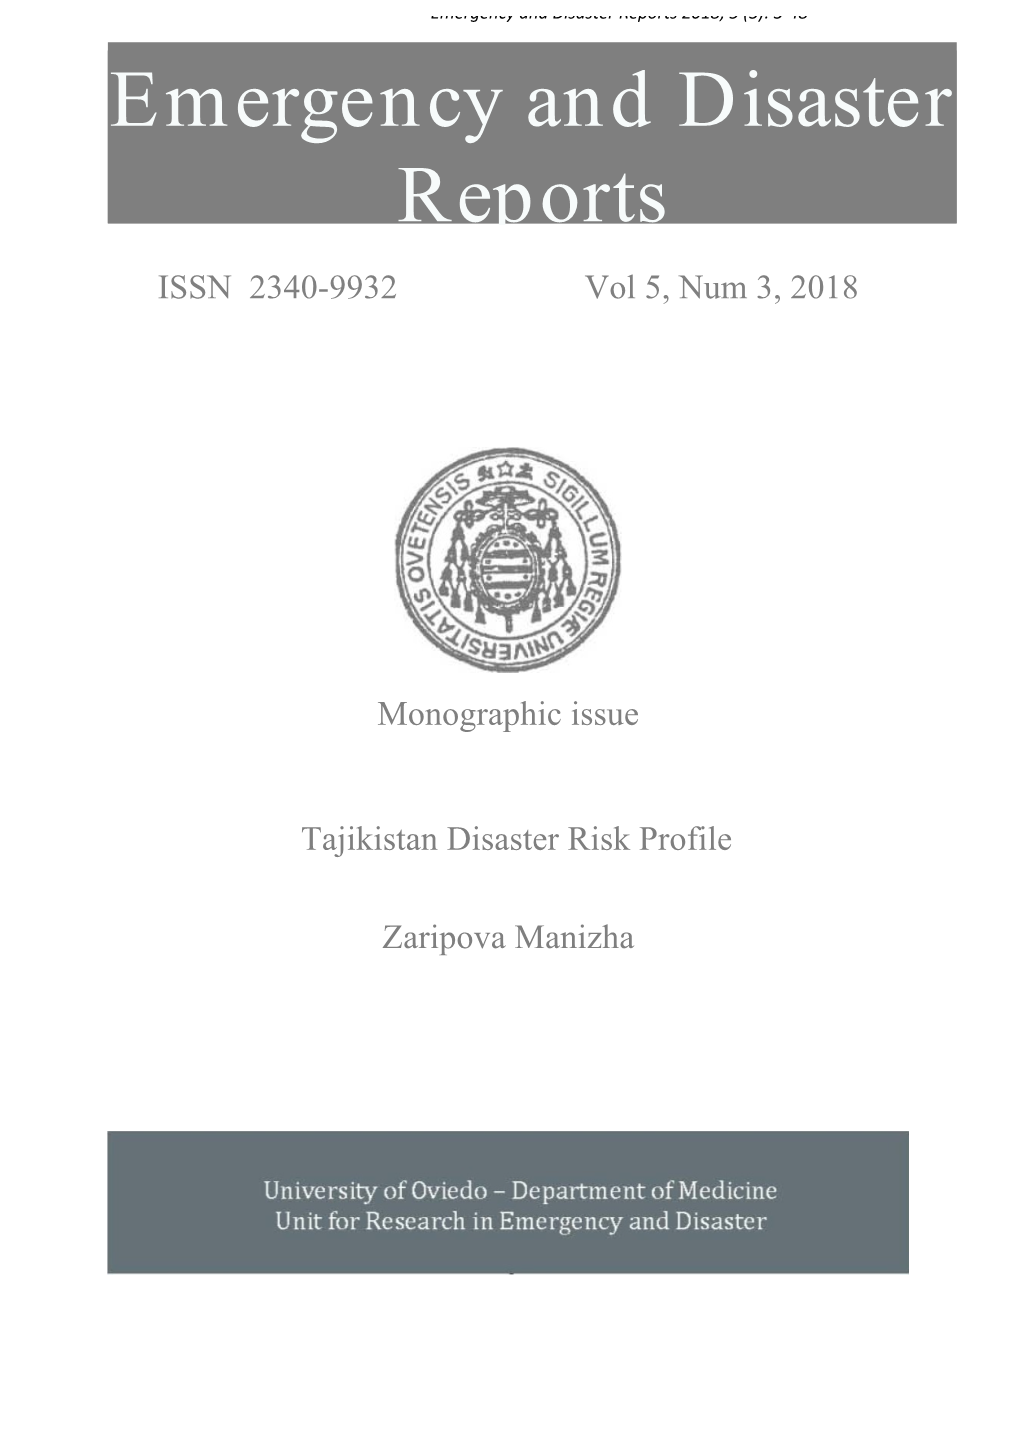 Tajikistan Disaster Risk Profile